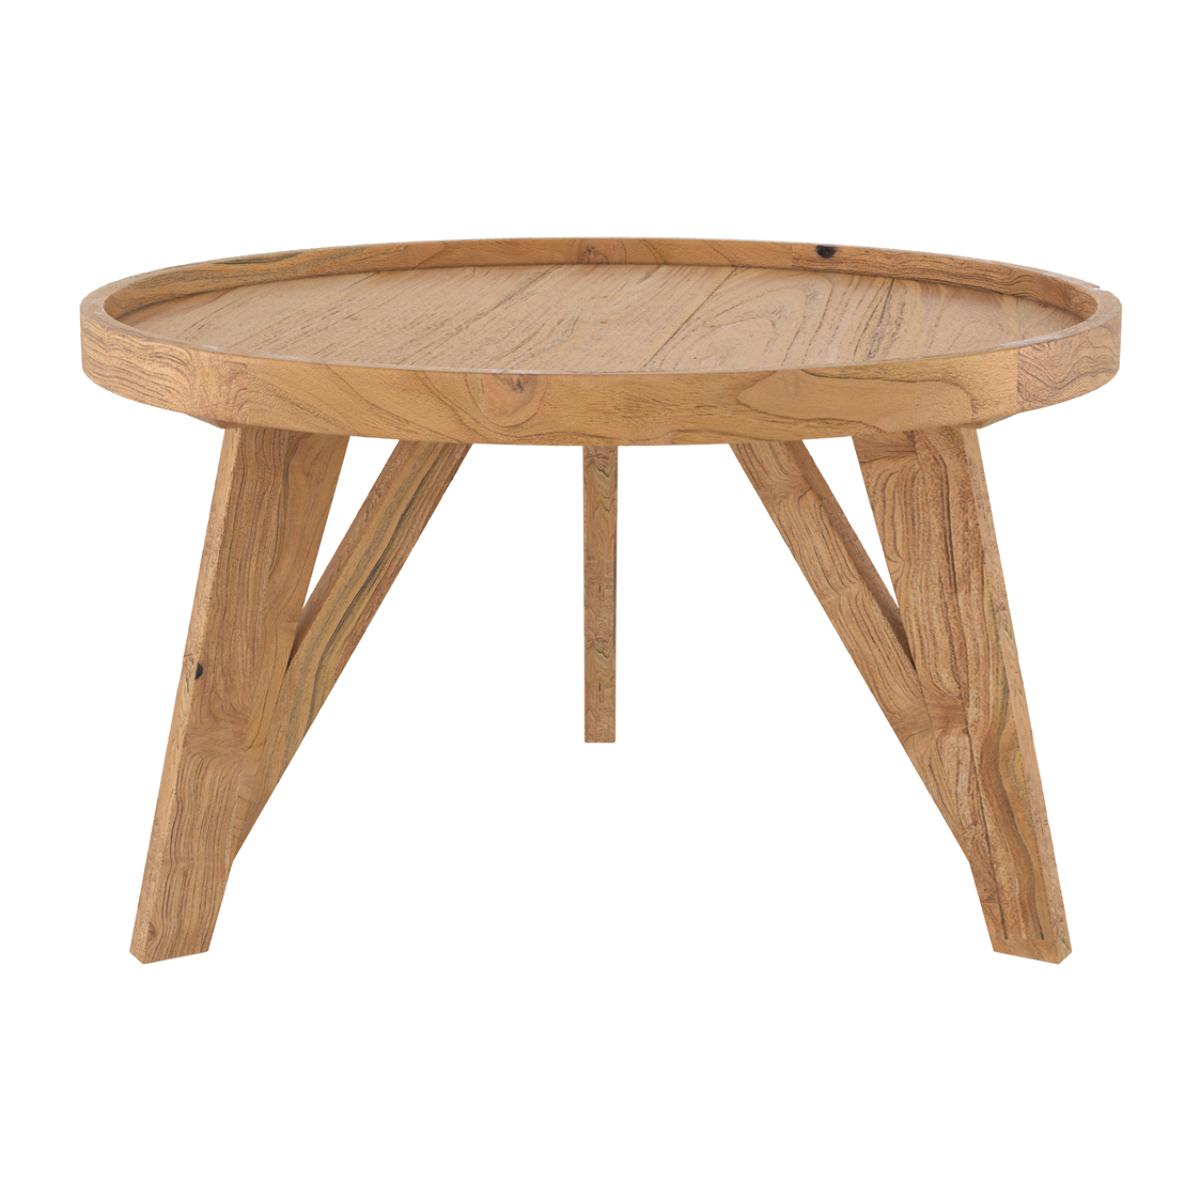 Table basse Suri D70 cm en bois de teck recyclé